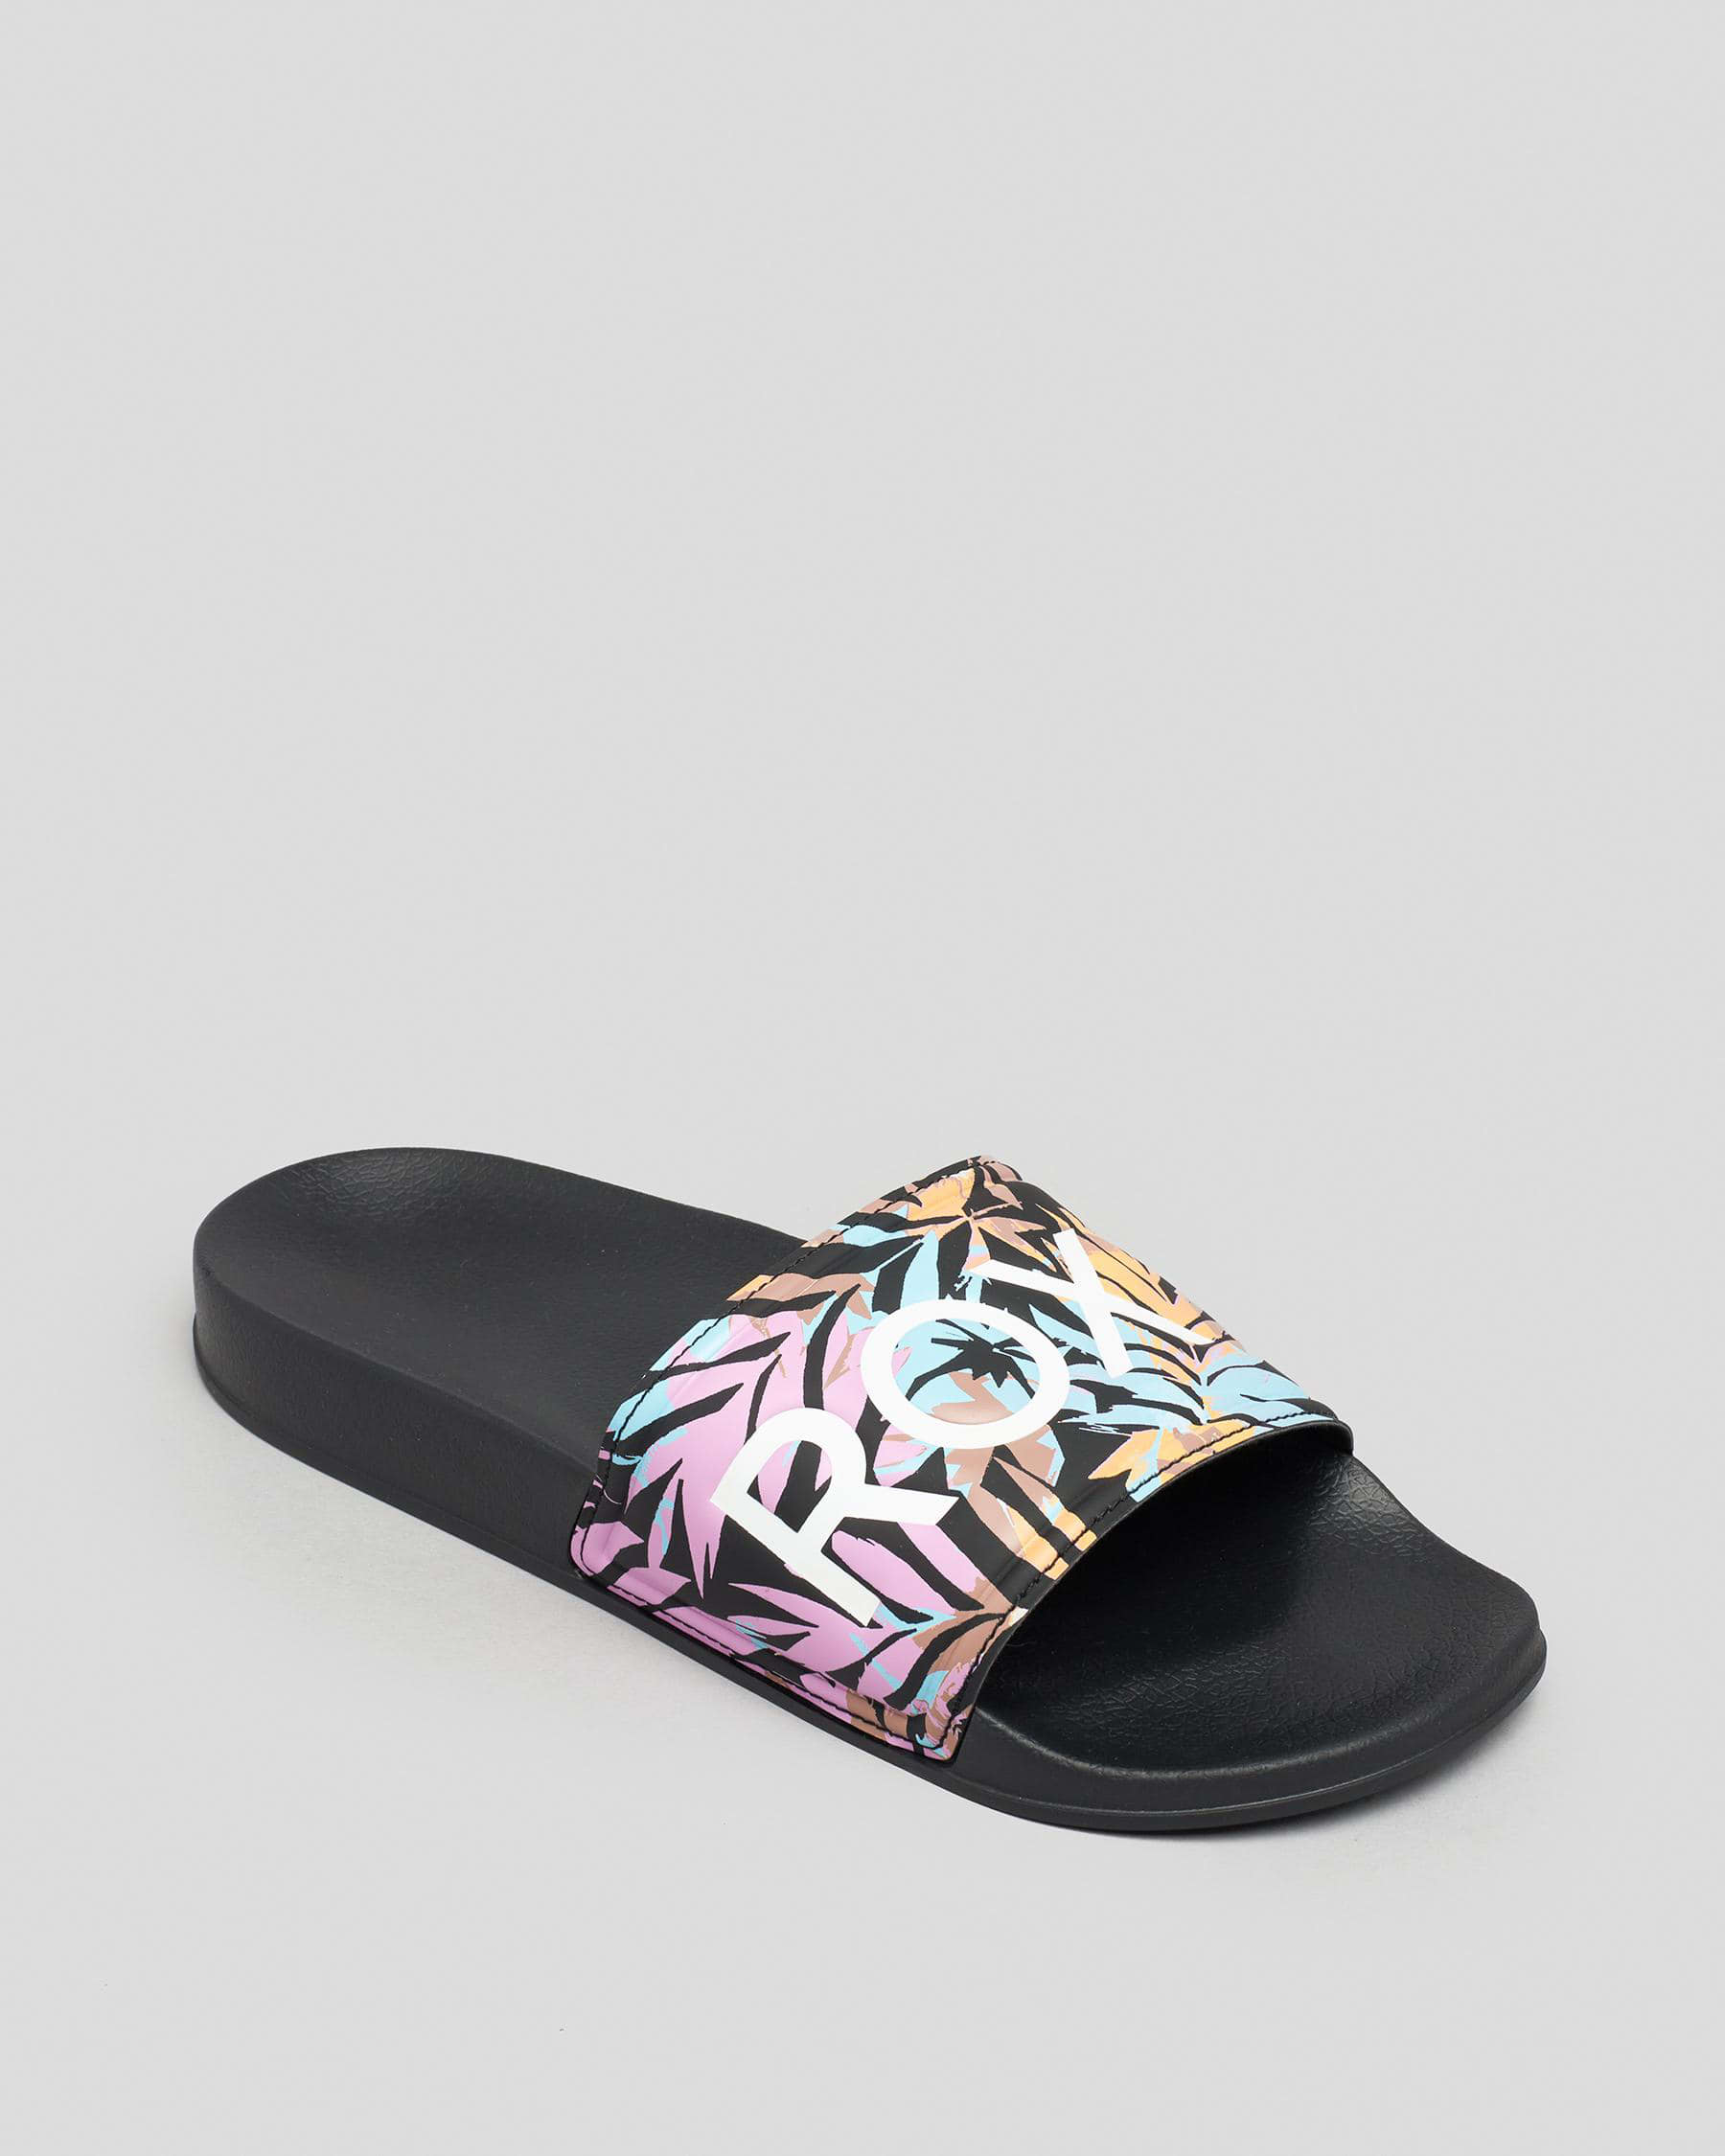 Roxy Slippy Slide Sandals In Black Multi - Fast Shipping & Easy Returns ...